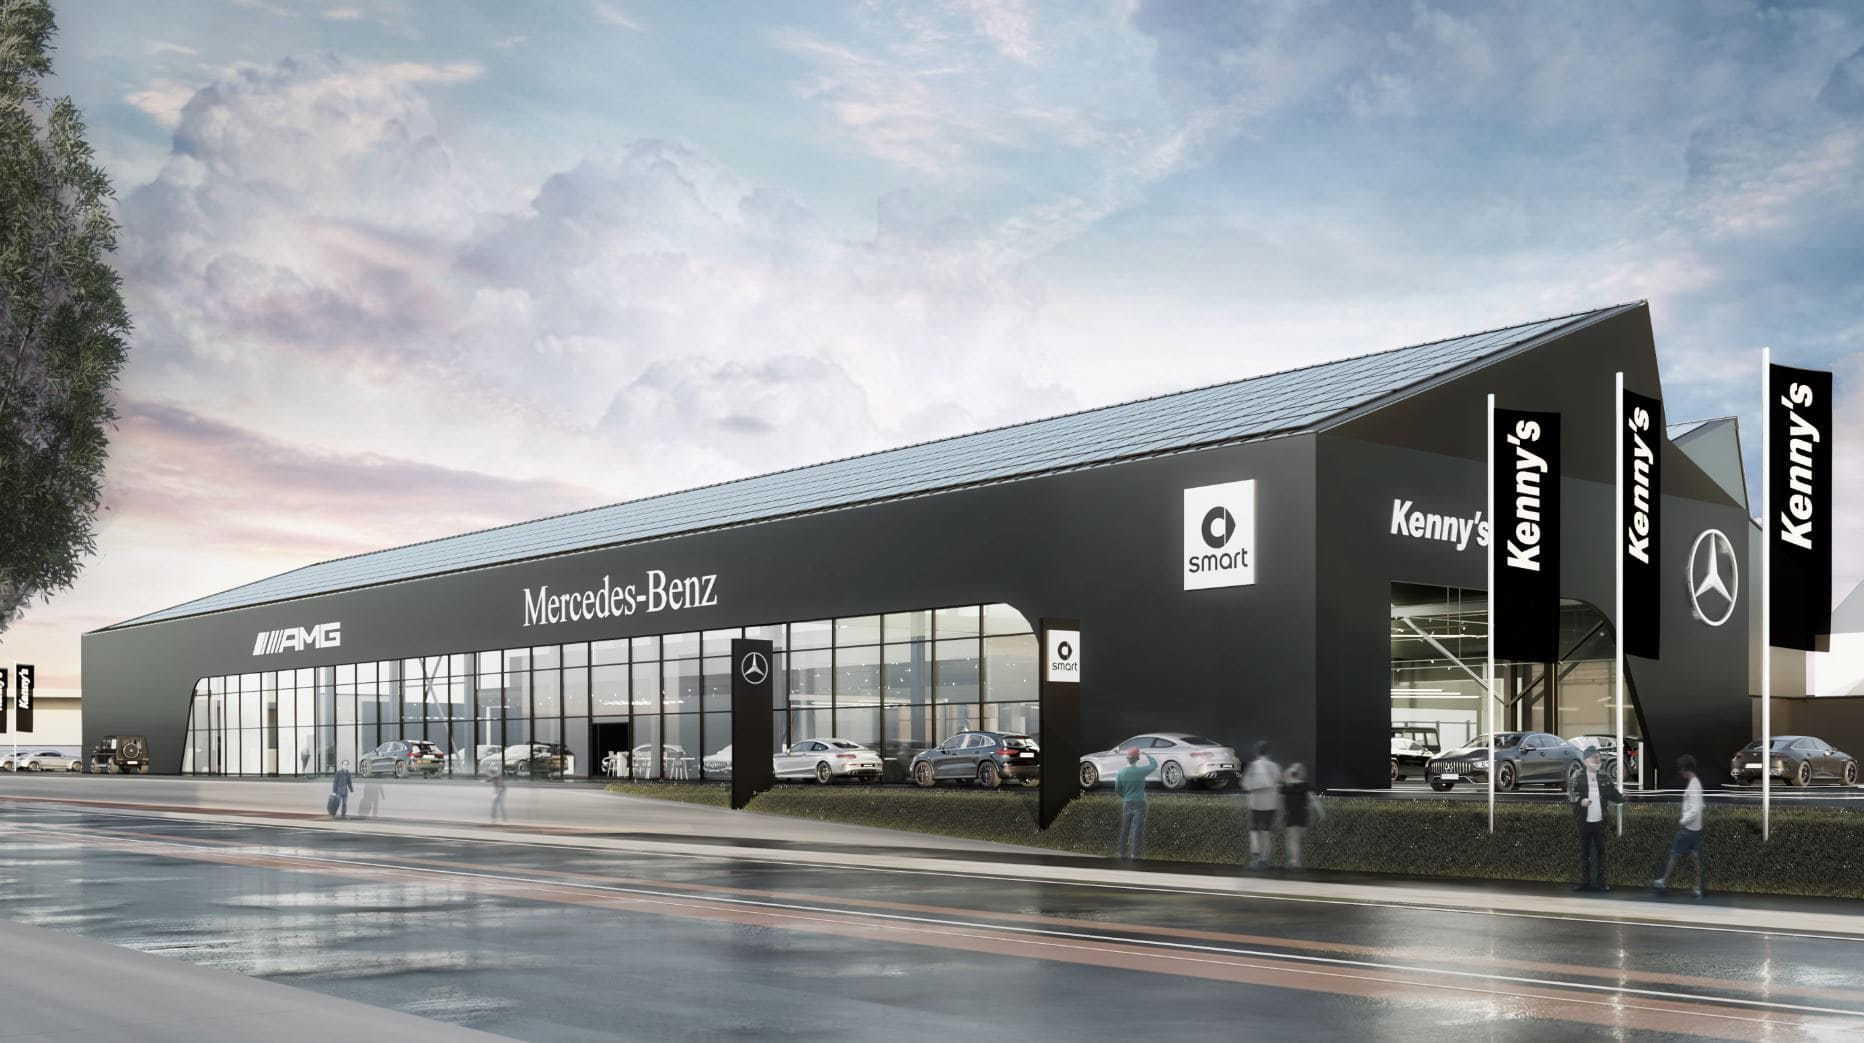 Referenz Kenny's Autocenter Entsorgungsratgeber | Toel Recycling AG